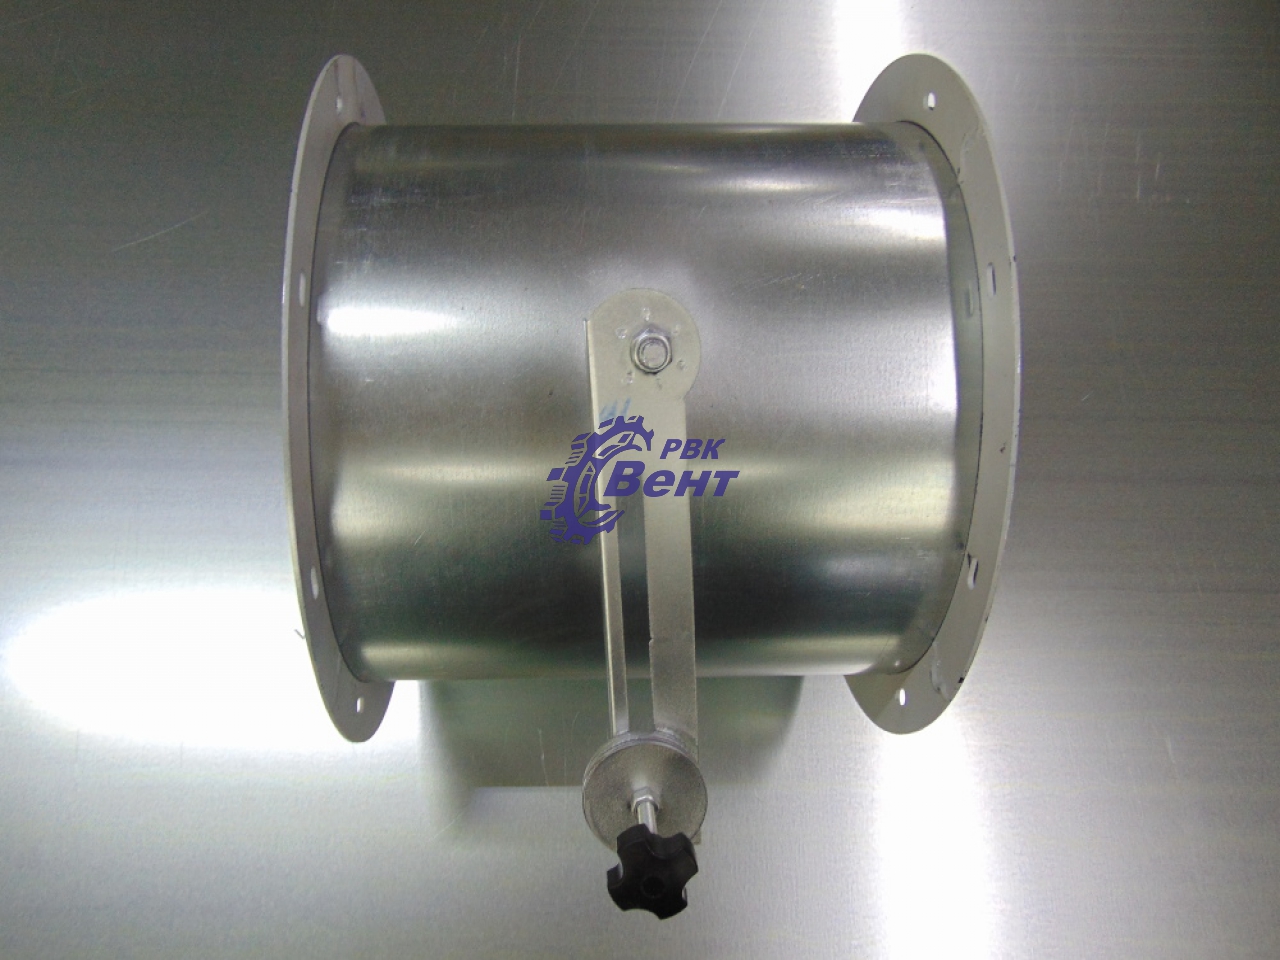 Клапан обратный круглый для систем вентиляции из оцинкованной стали